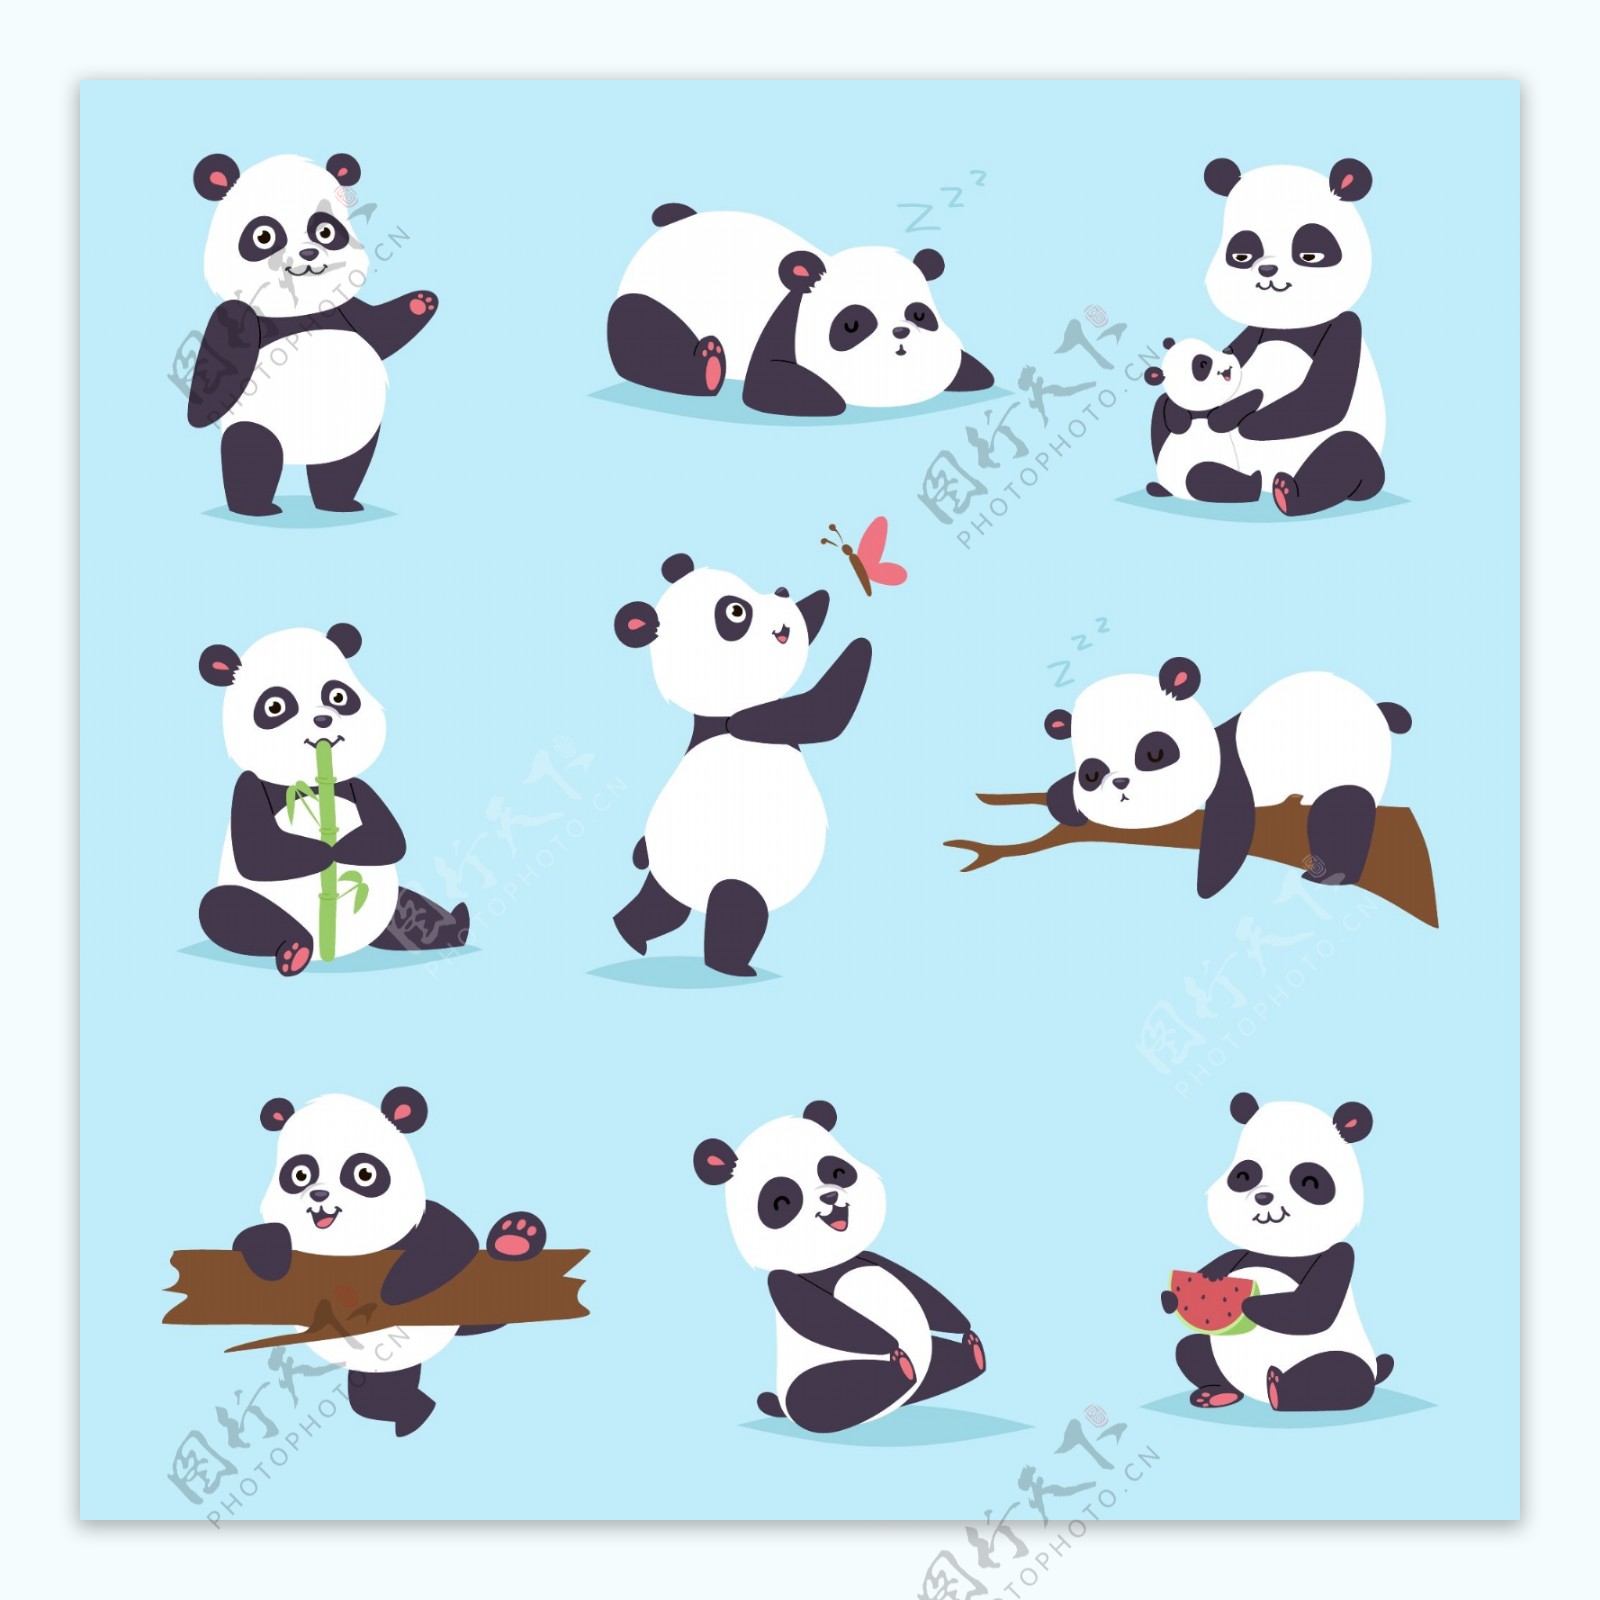 多款可爱卡通大熊猫矢量素材